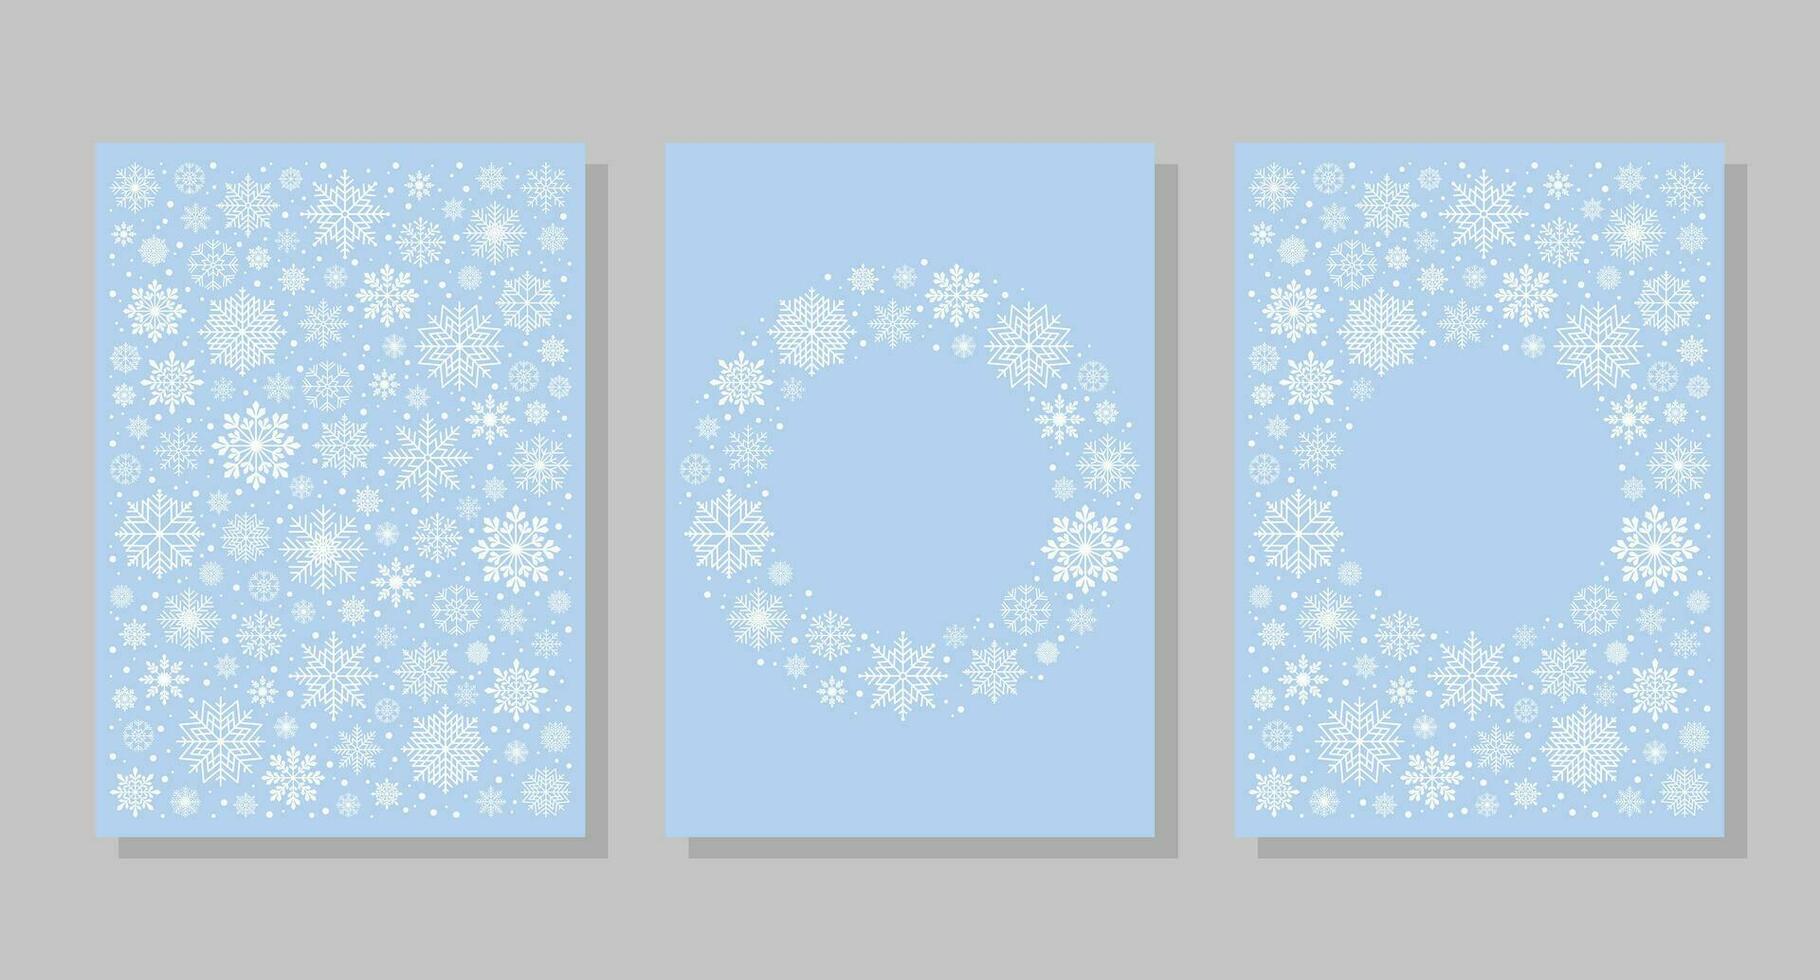 winter achtergronden met sneeuwvlokken en sneeuw, kozijnen. vector illustratie. sociaal media banier sjabloon voor verhalen, berichten, blogs, kaarten.